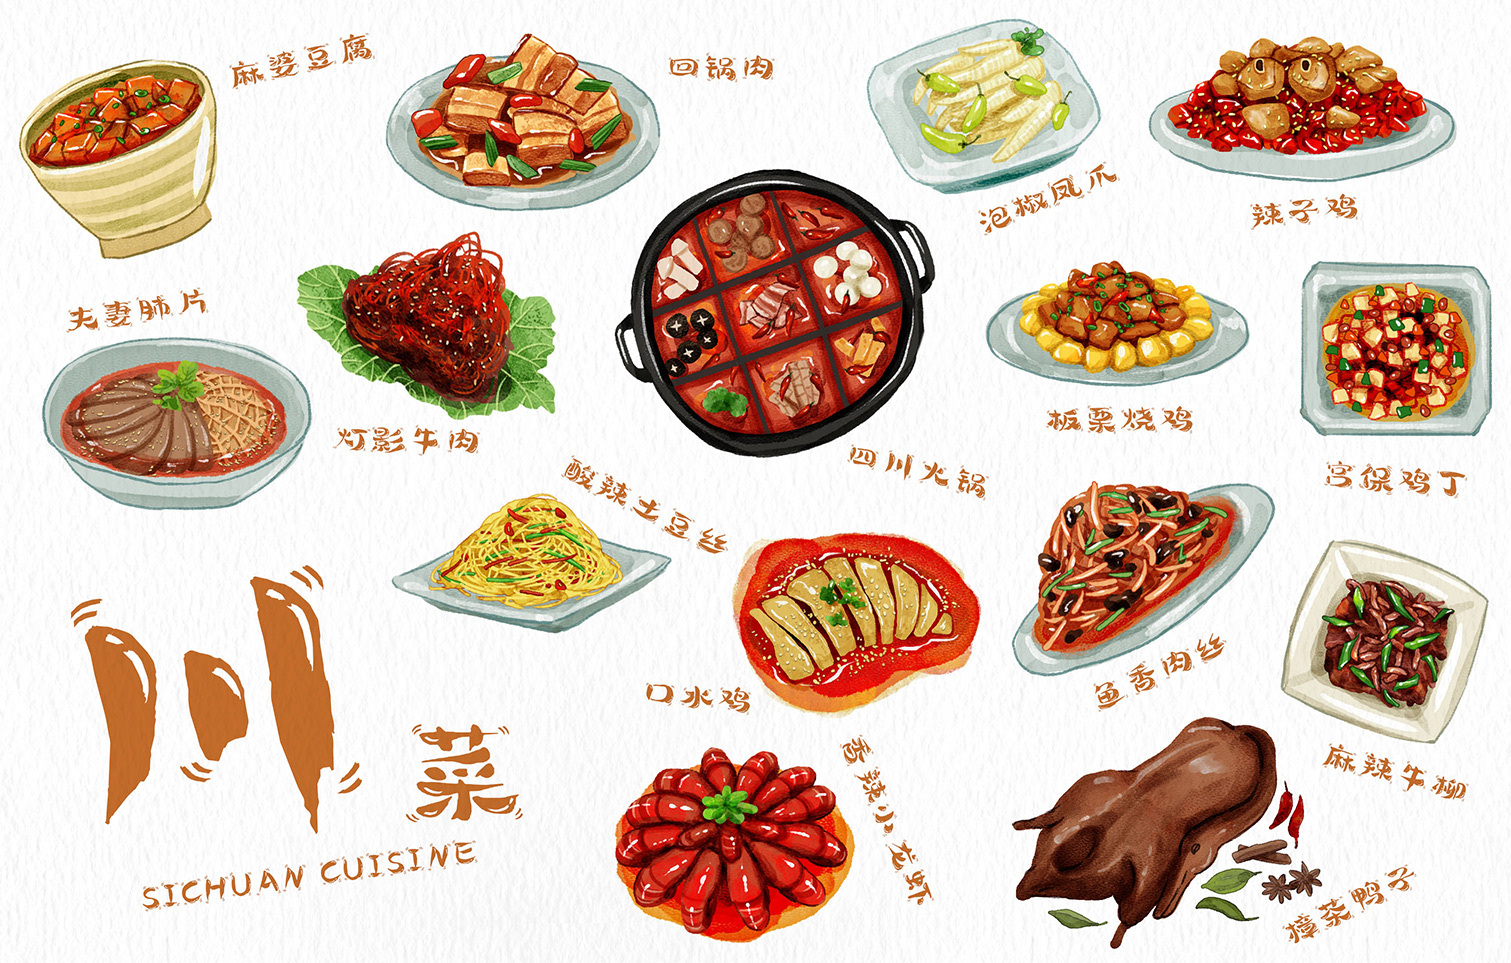 【塔菇菜】塌棵菜料理怎麼煮？簡單清炒、經典上海菜飯，營養豐富又美味 - 愛料理生活誌